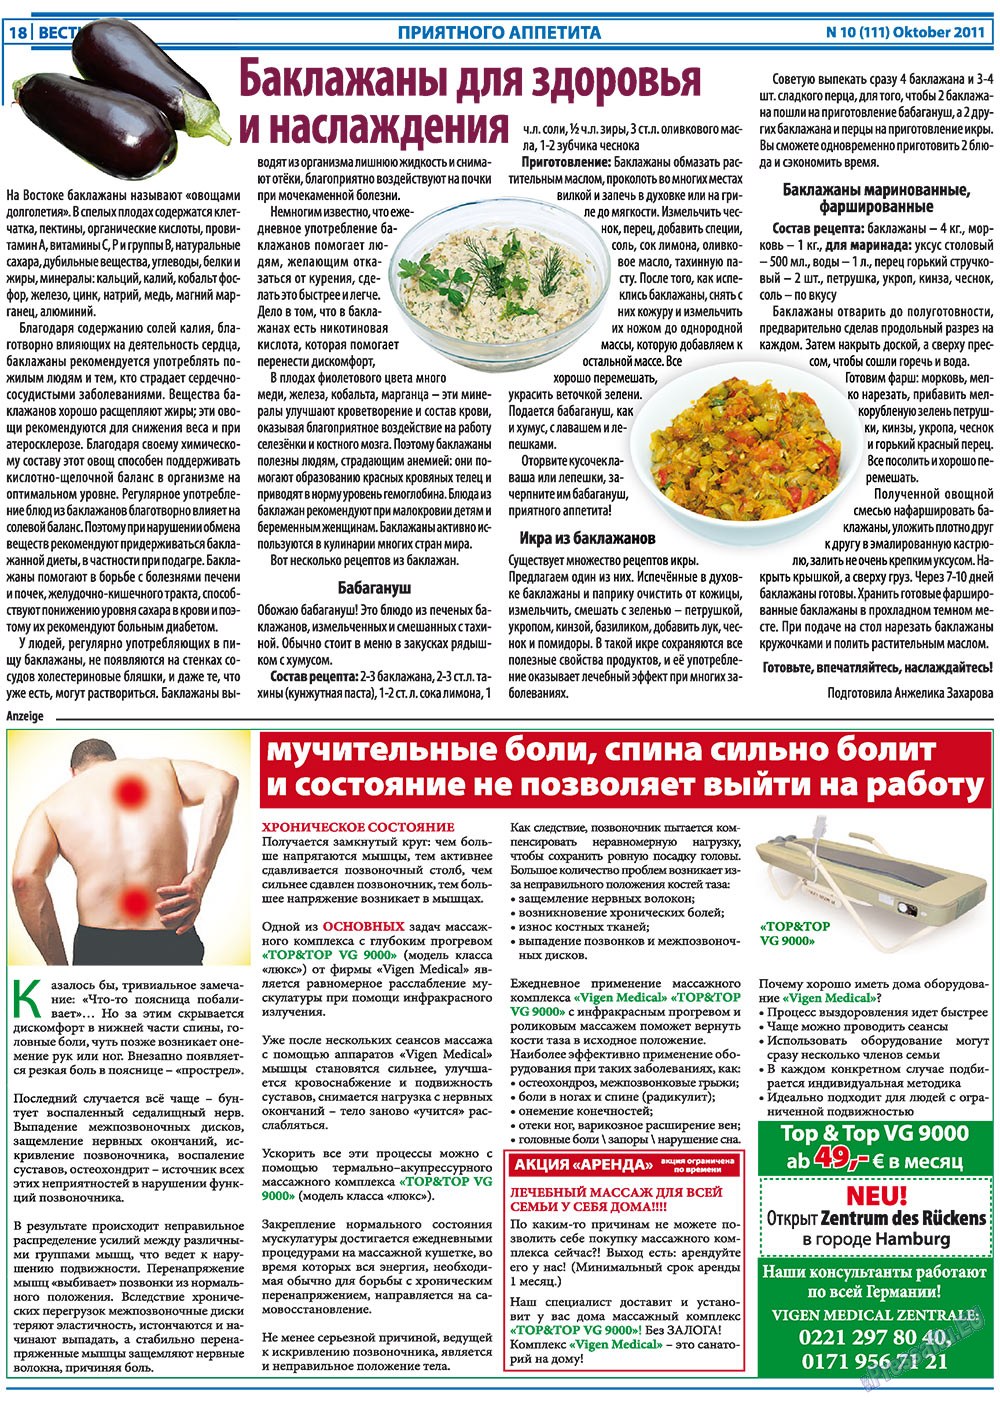 Вести, газета. 2011 №10 стр.18